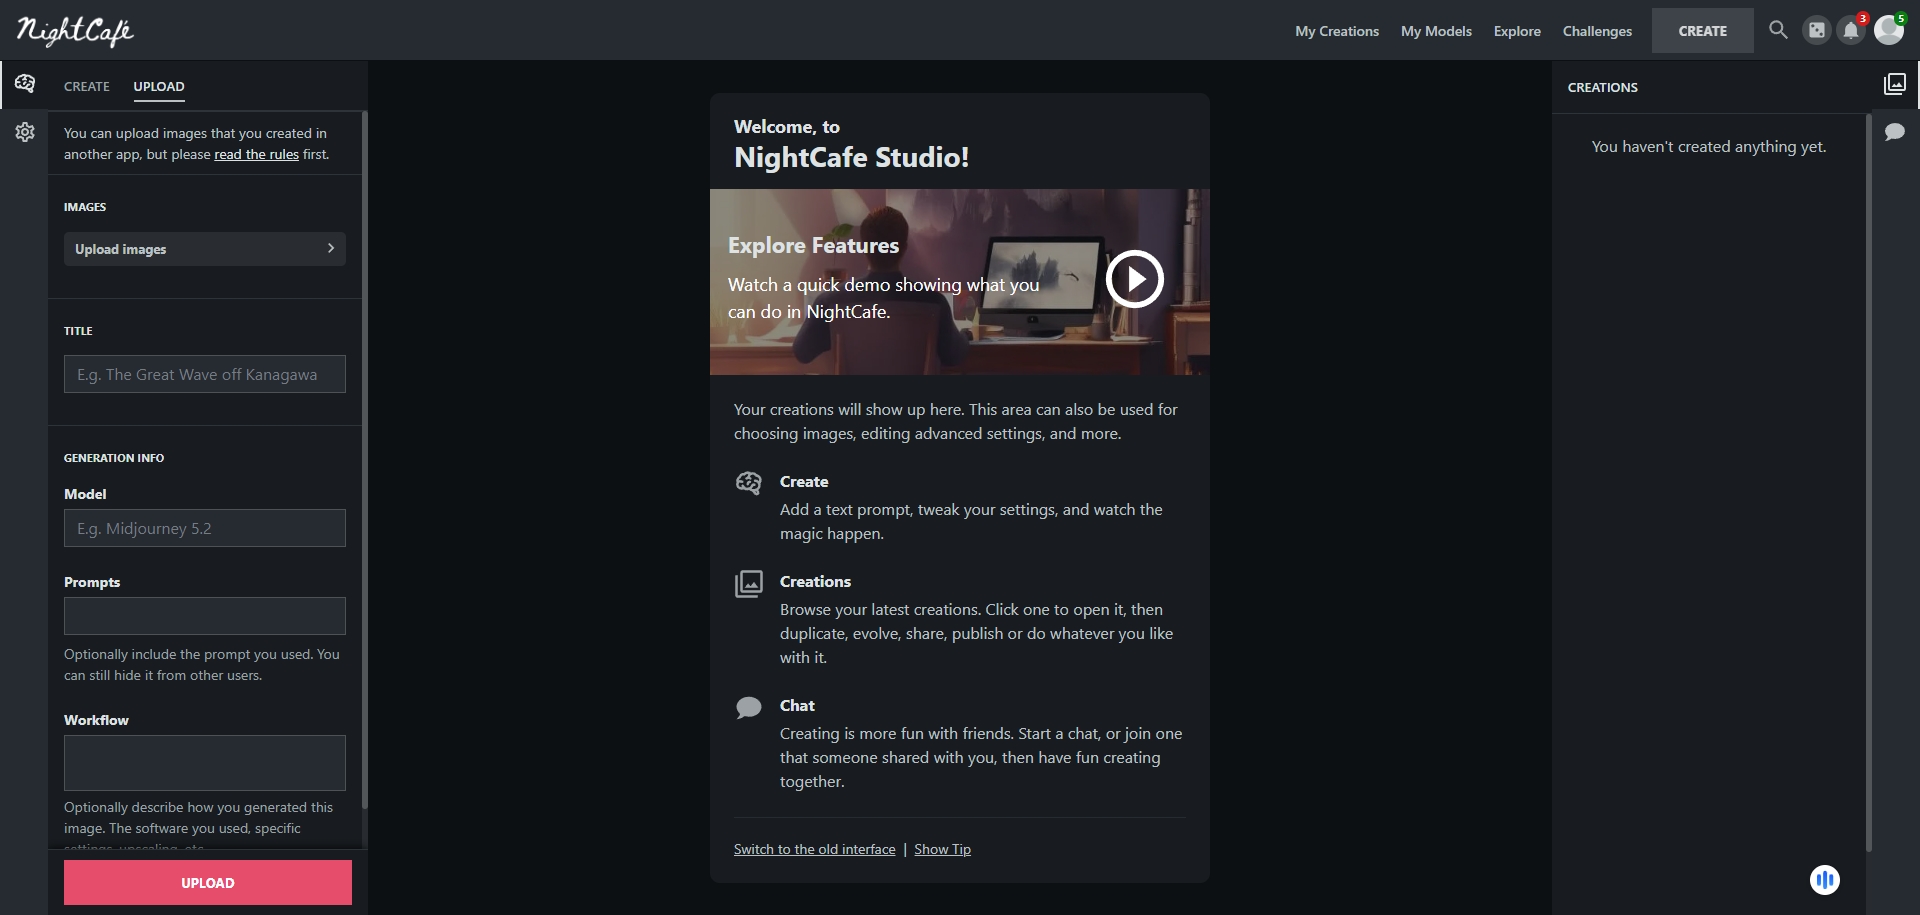 NightCafe-AI - aitooldr.com